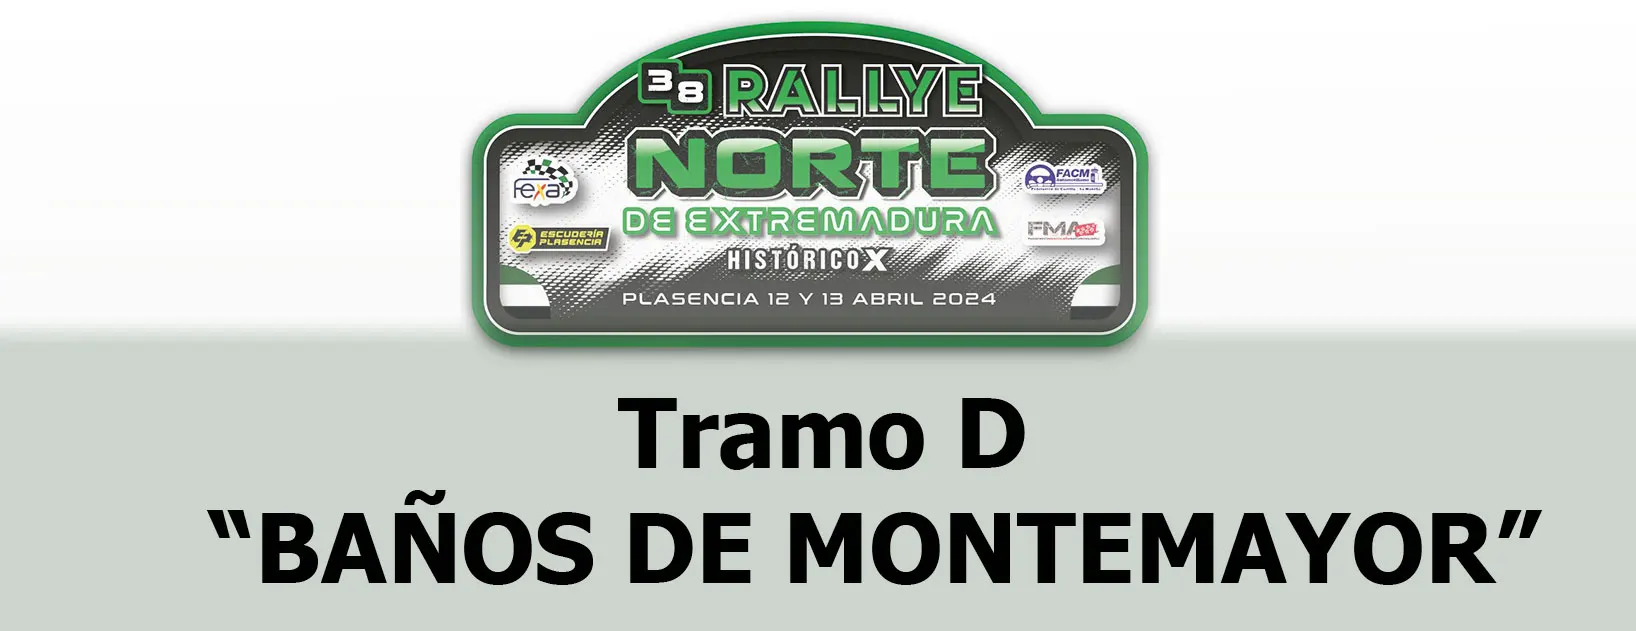 TC D1 - "Baños de Montemayor", Sale el vehículo 1 a las 16:21 